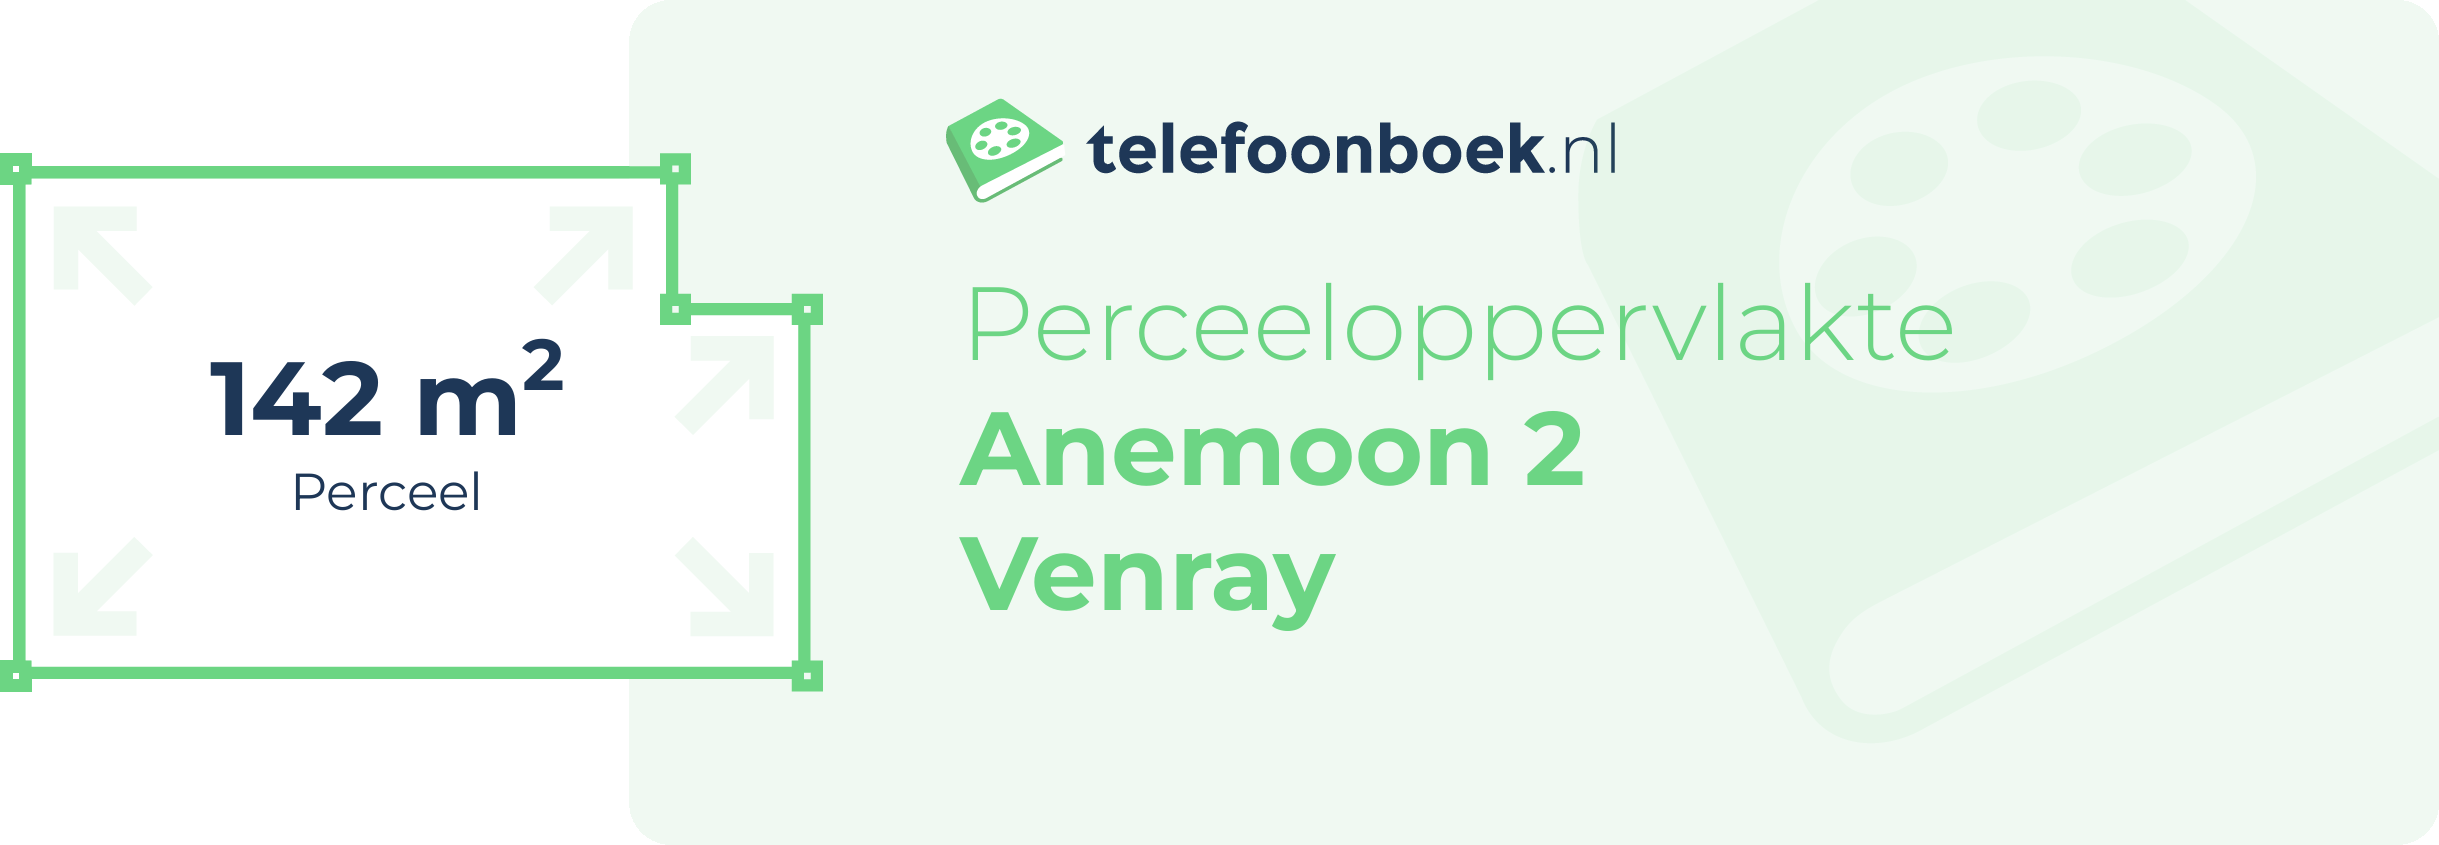 Perceeloppervlakte Anemoon 2 Venray